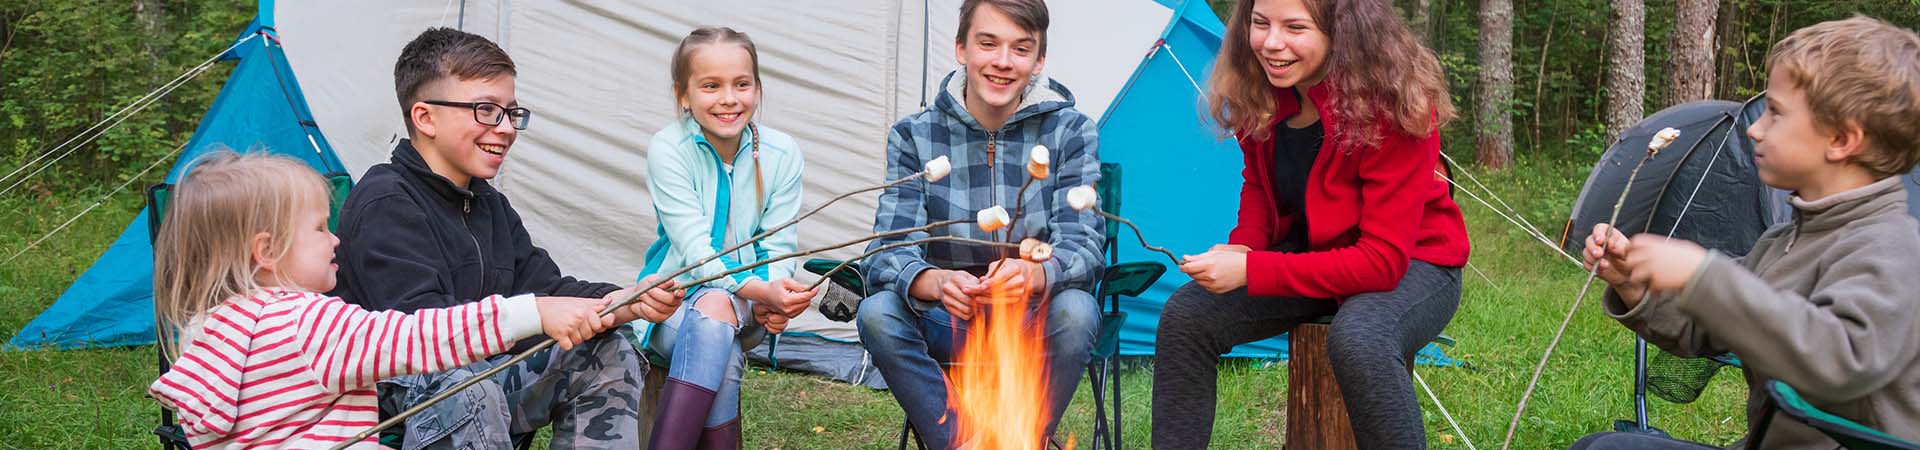 Feriencamp – Kinder grillen Marshmallows über einem Lagerfeuer.